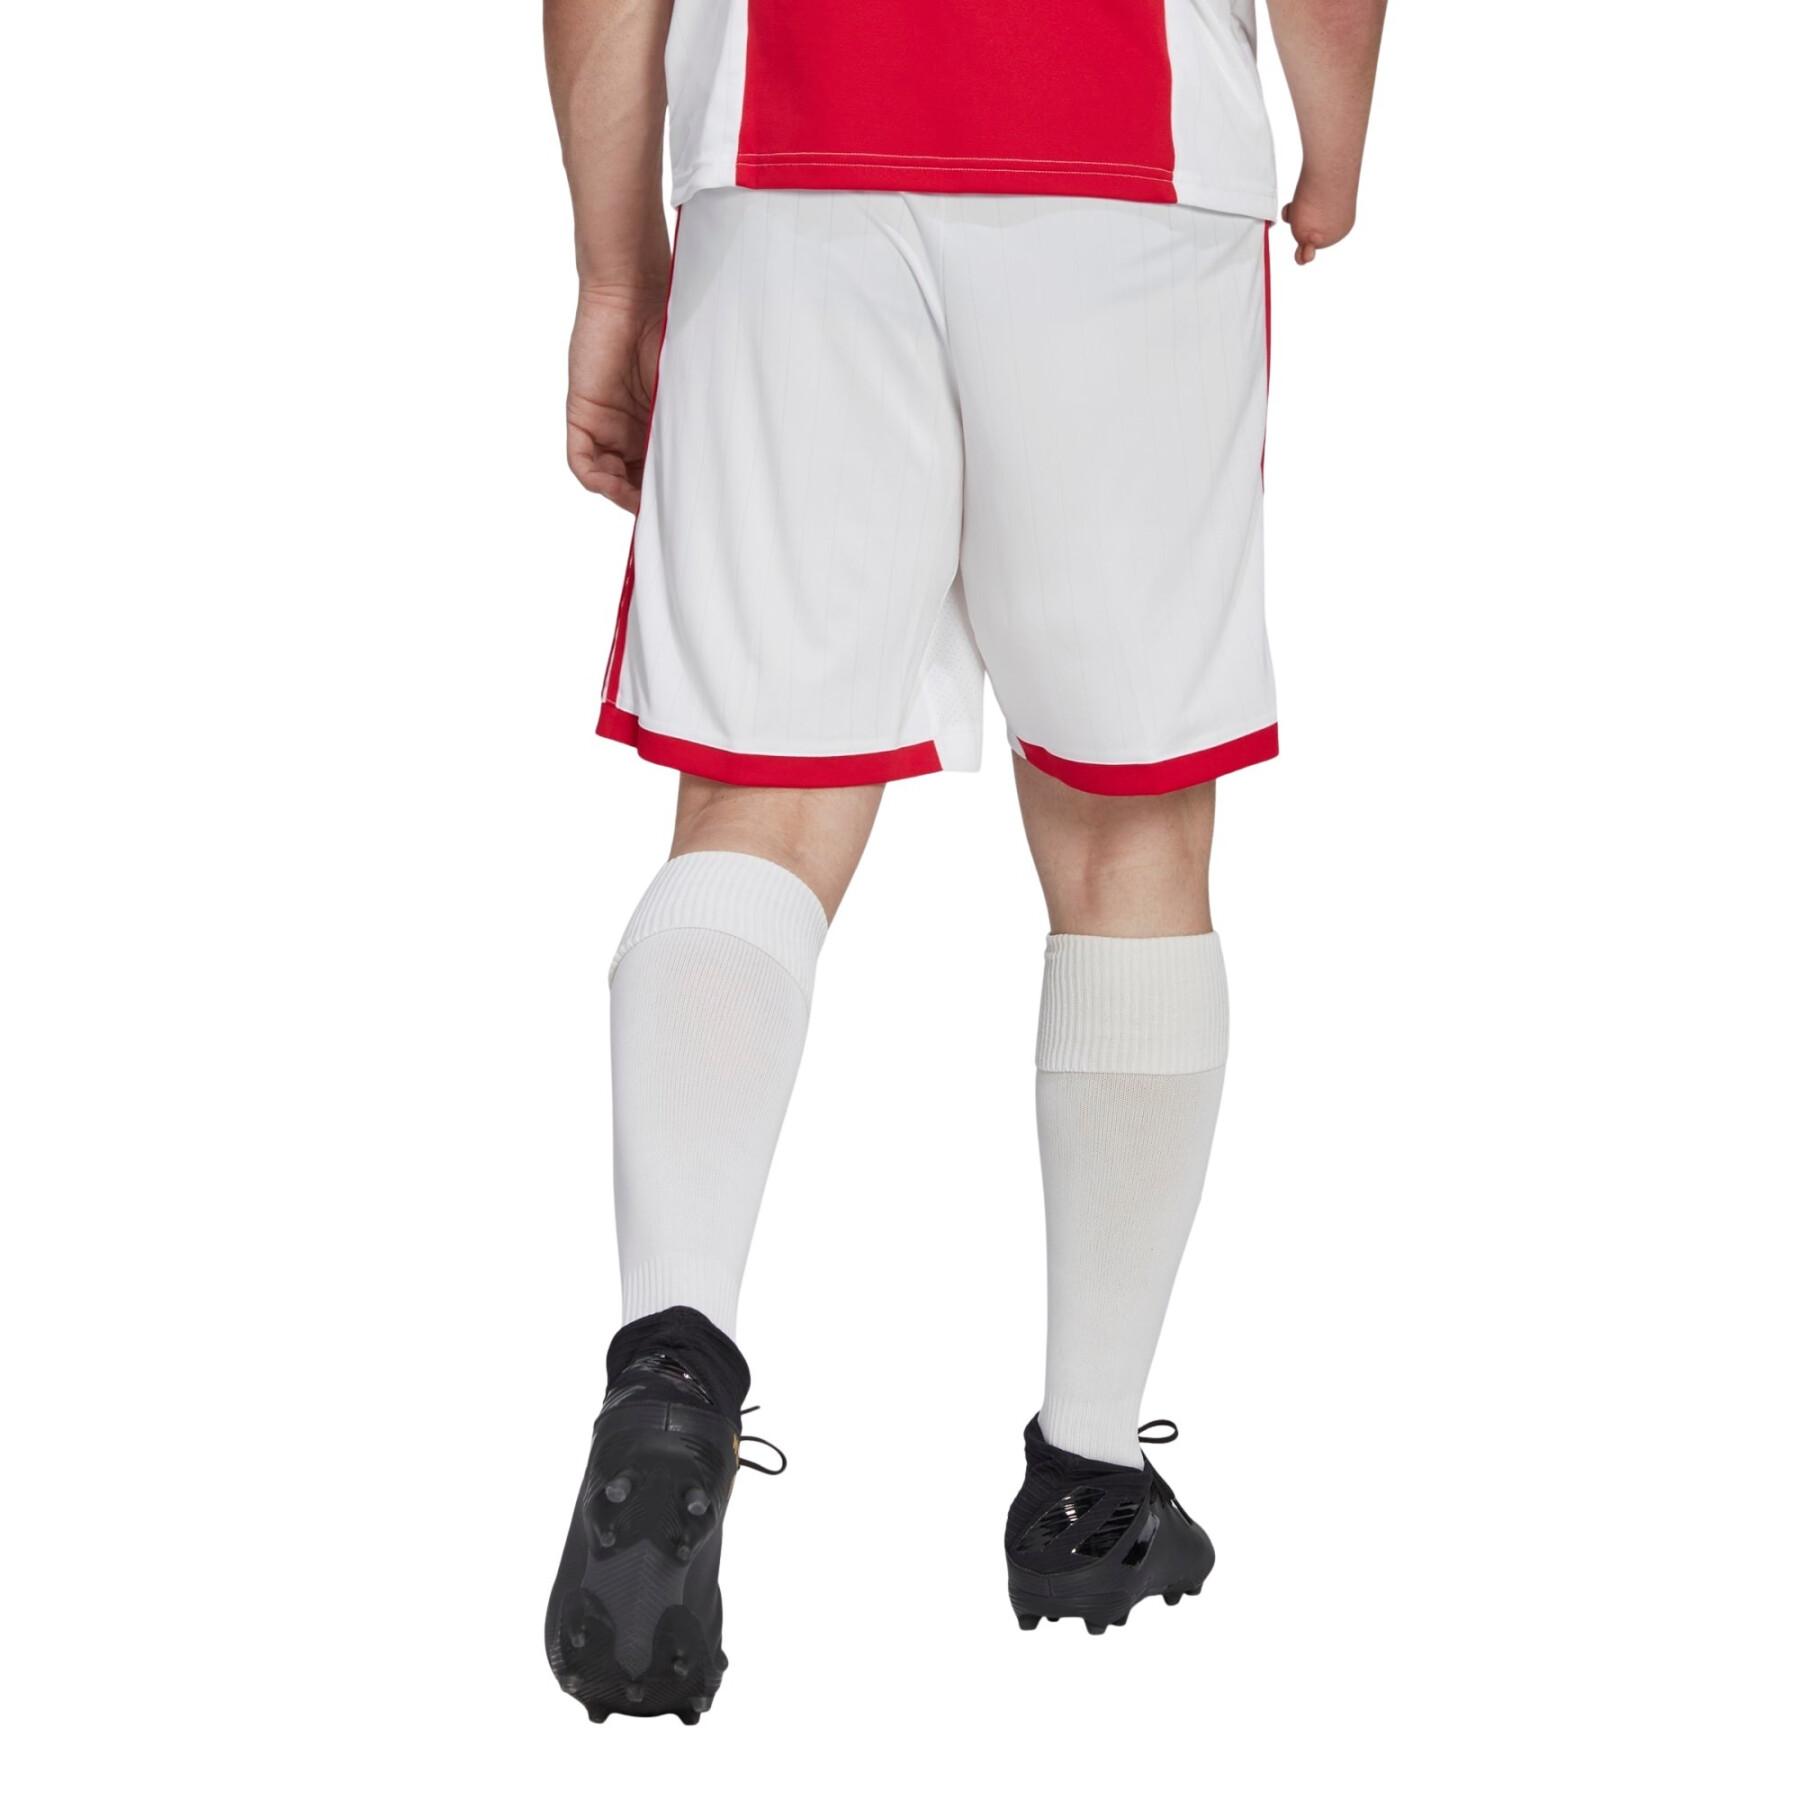 Hem shorts Ajax Amsterdam 2022/23